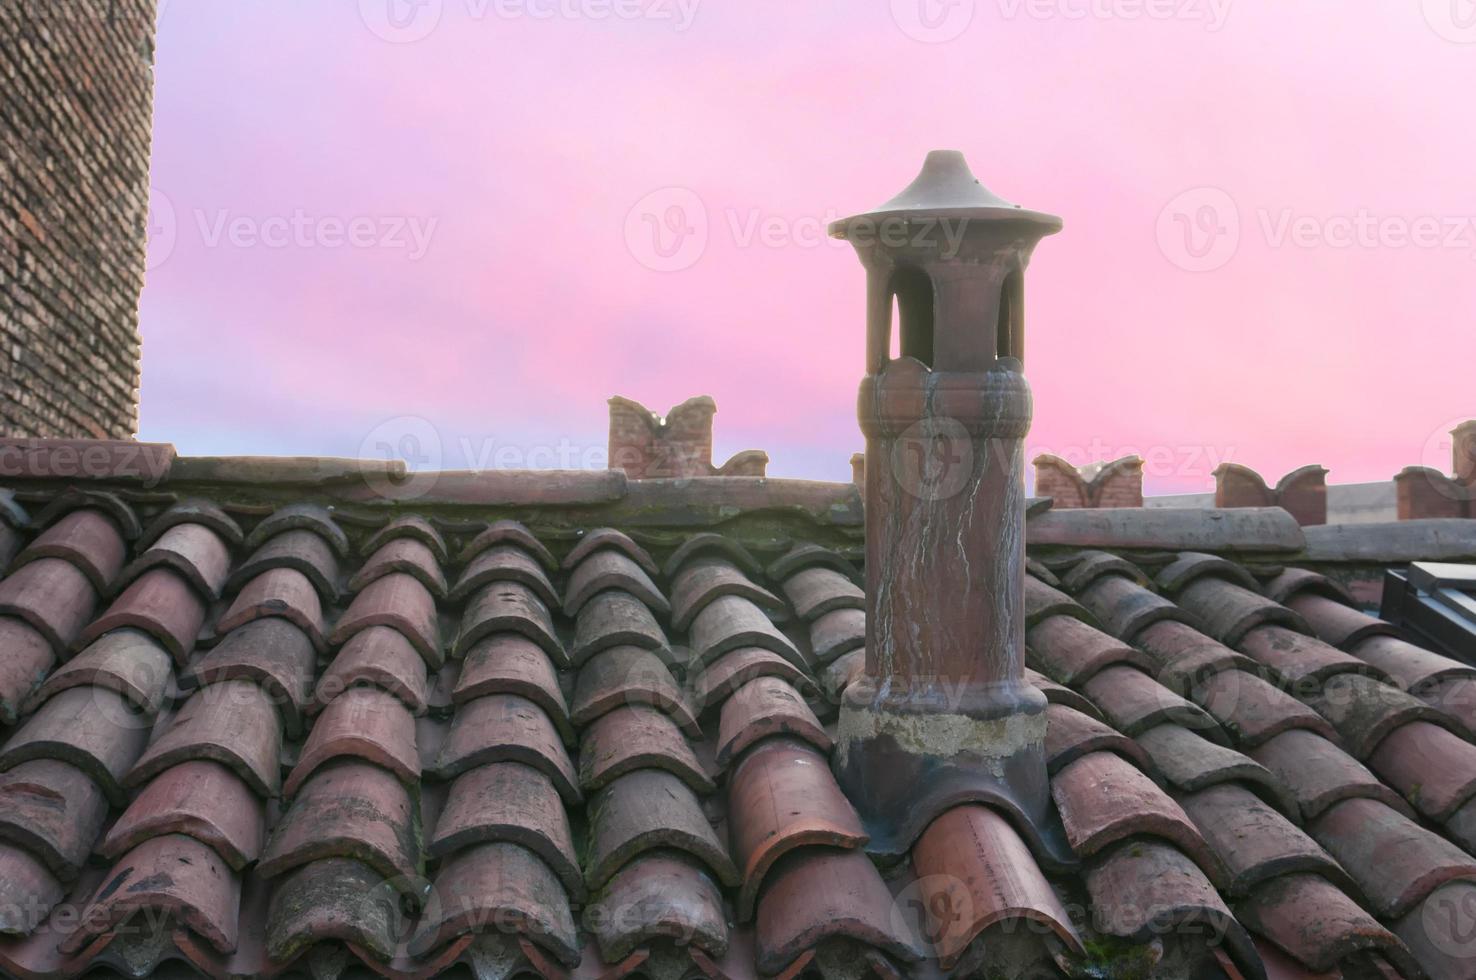 bolonia italia medieval edificio ladrillo techo foto